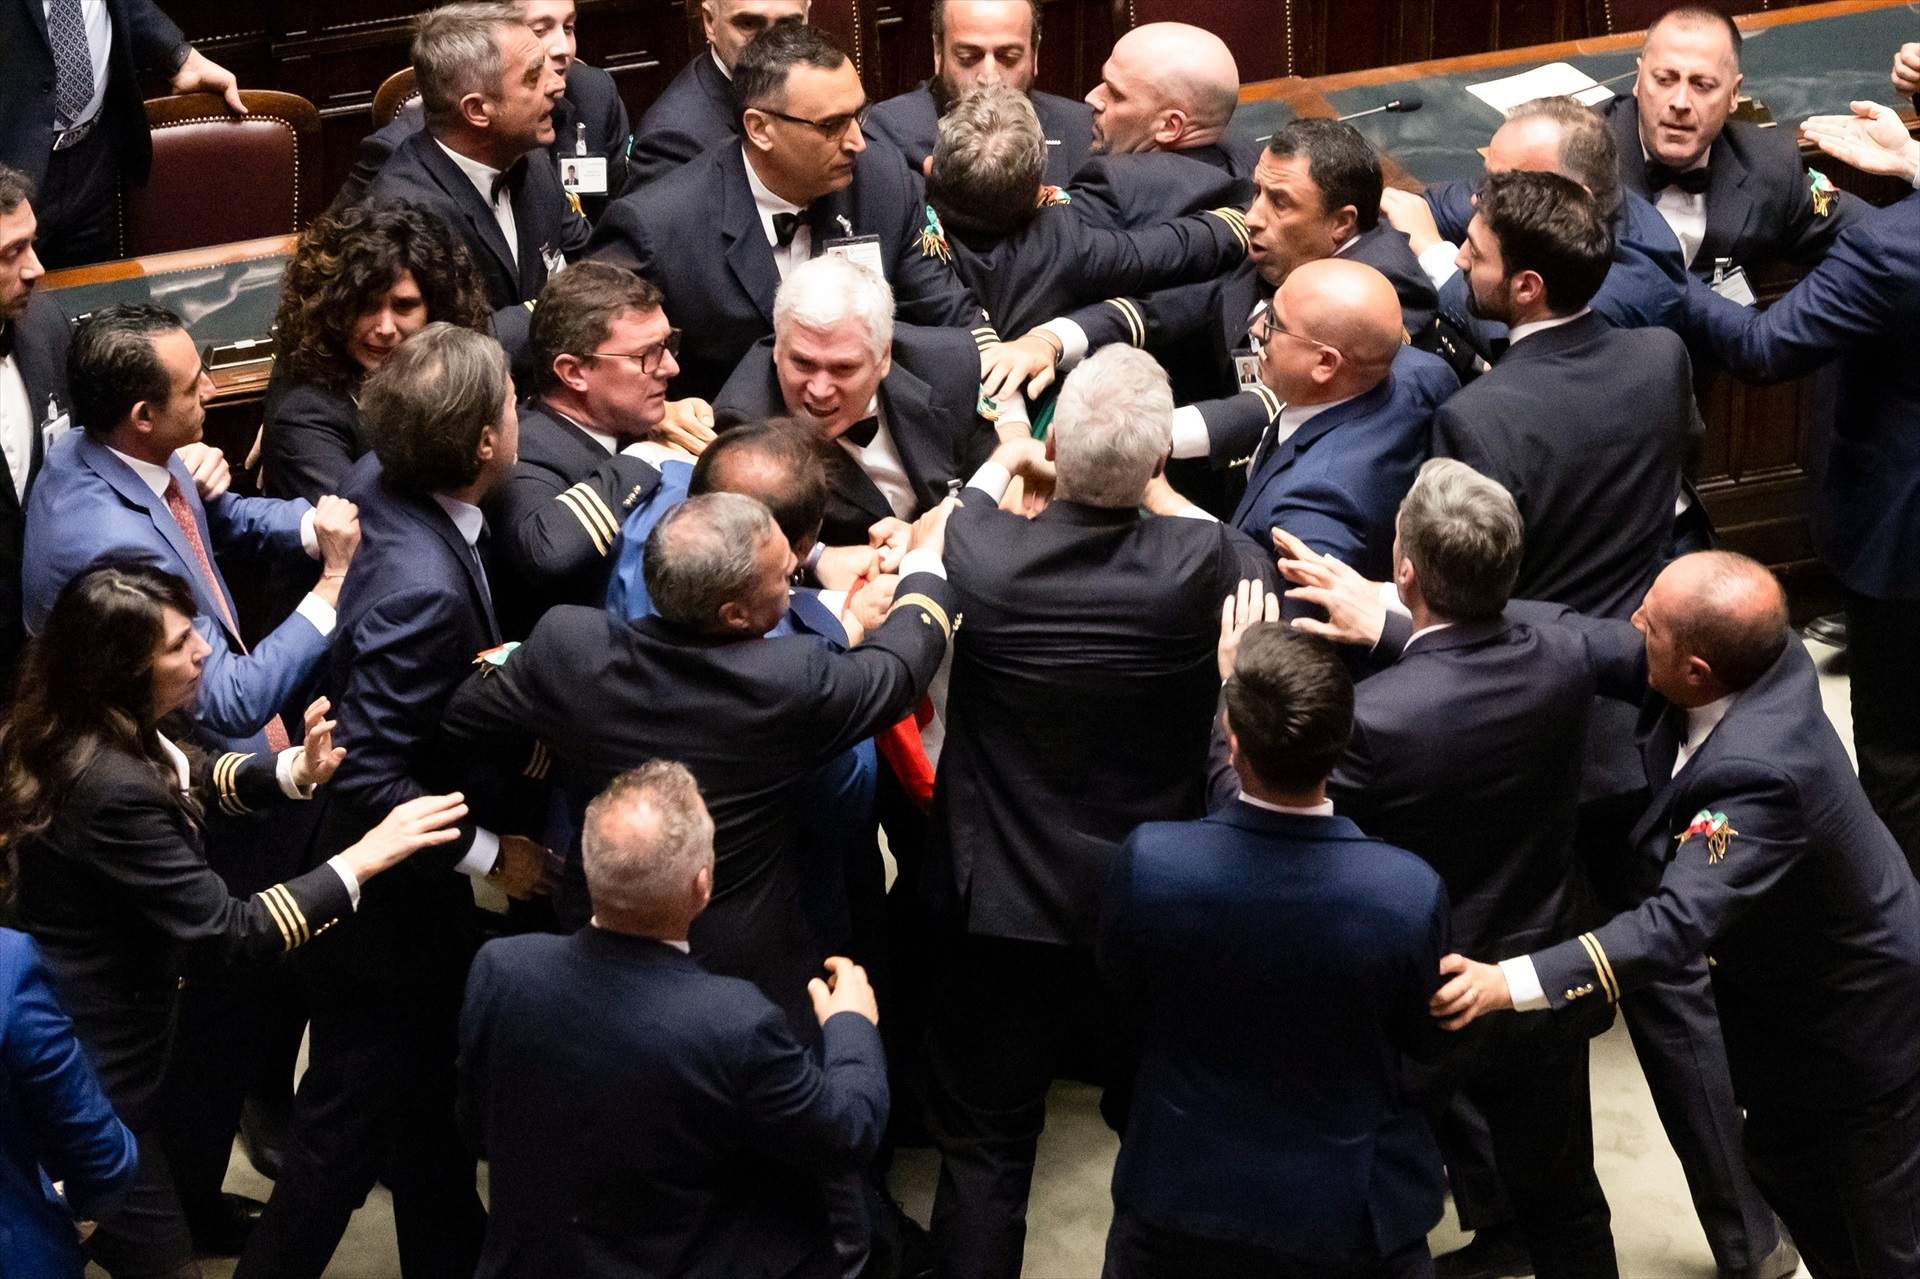 Baralla al Parlament italià: representants de l'extrema dreta agredeixen a cops de puny un diputat